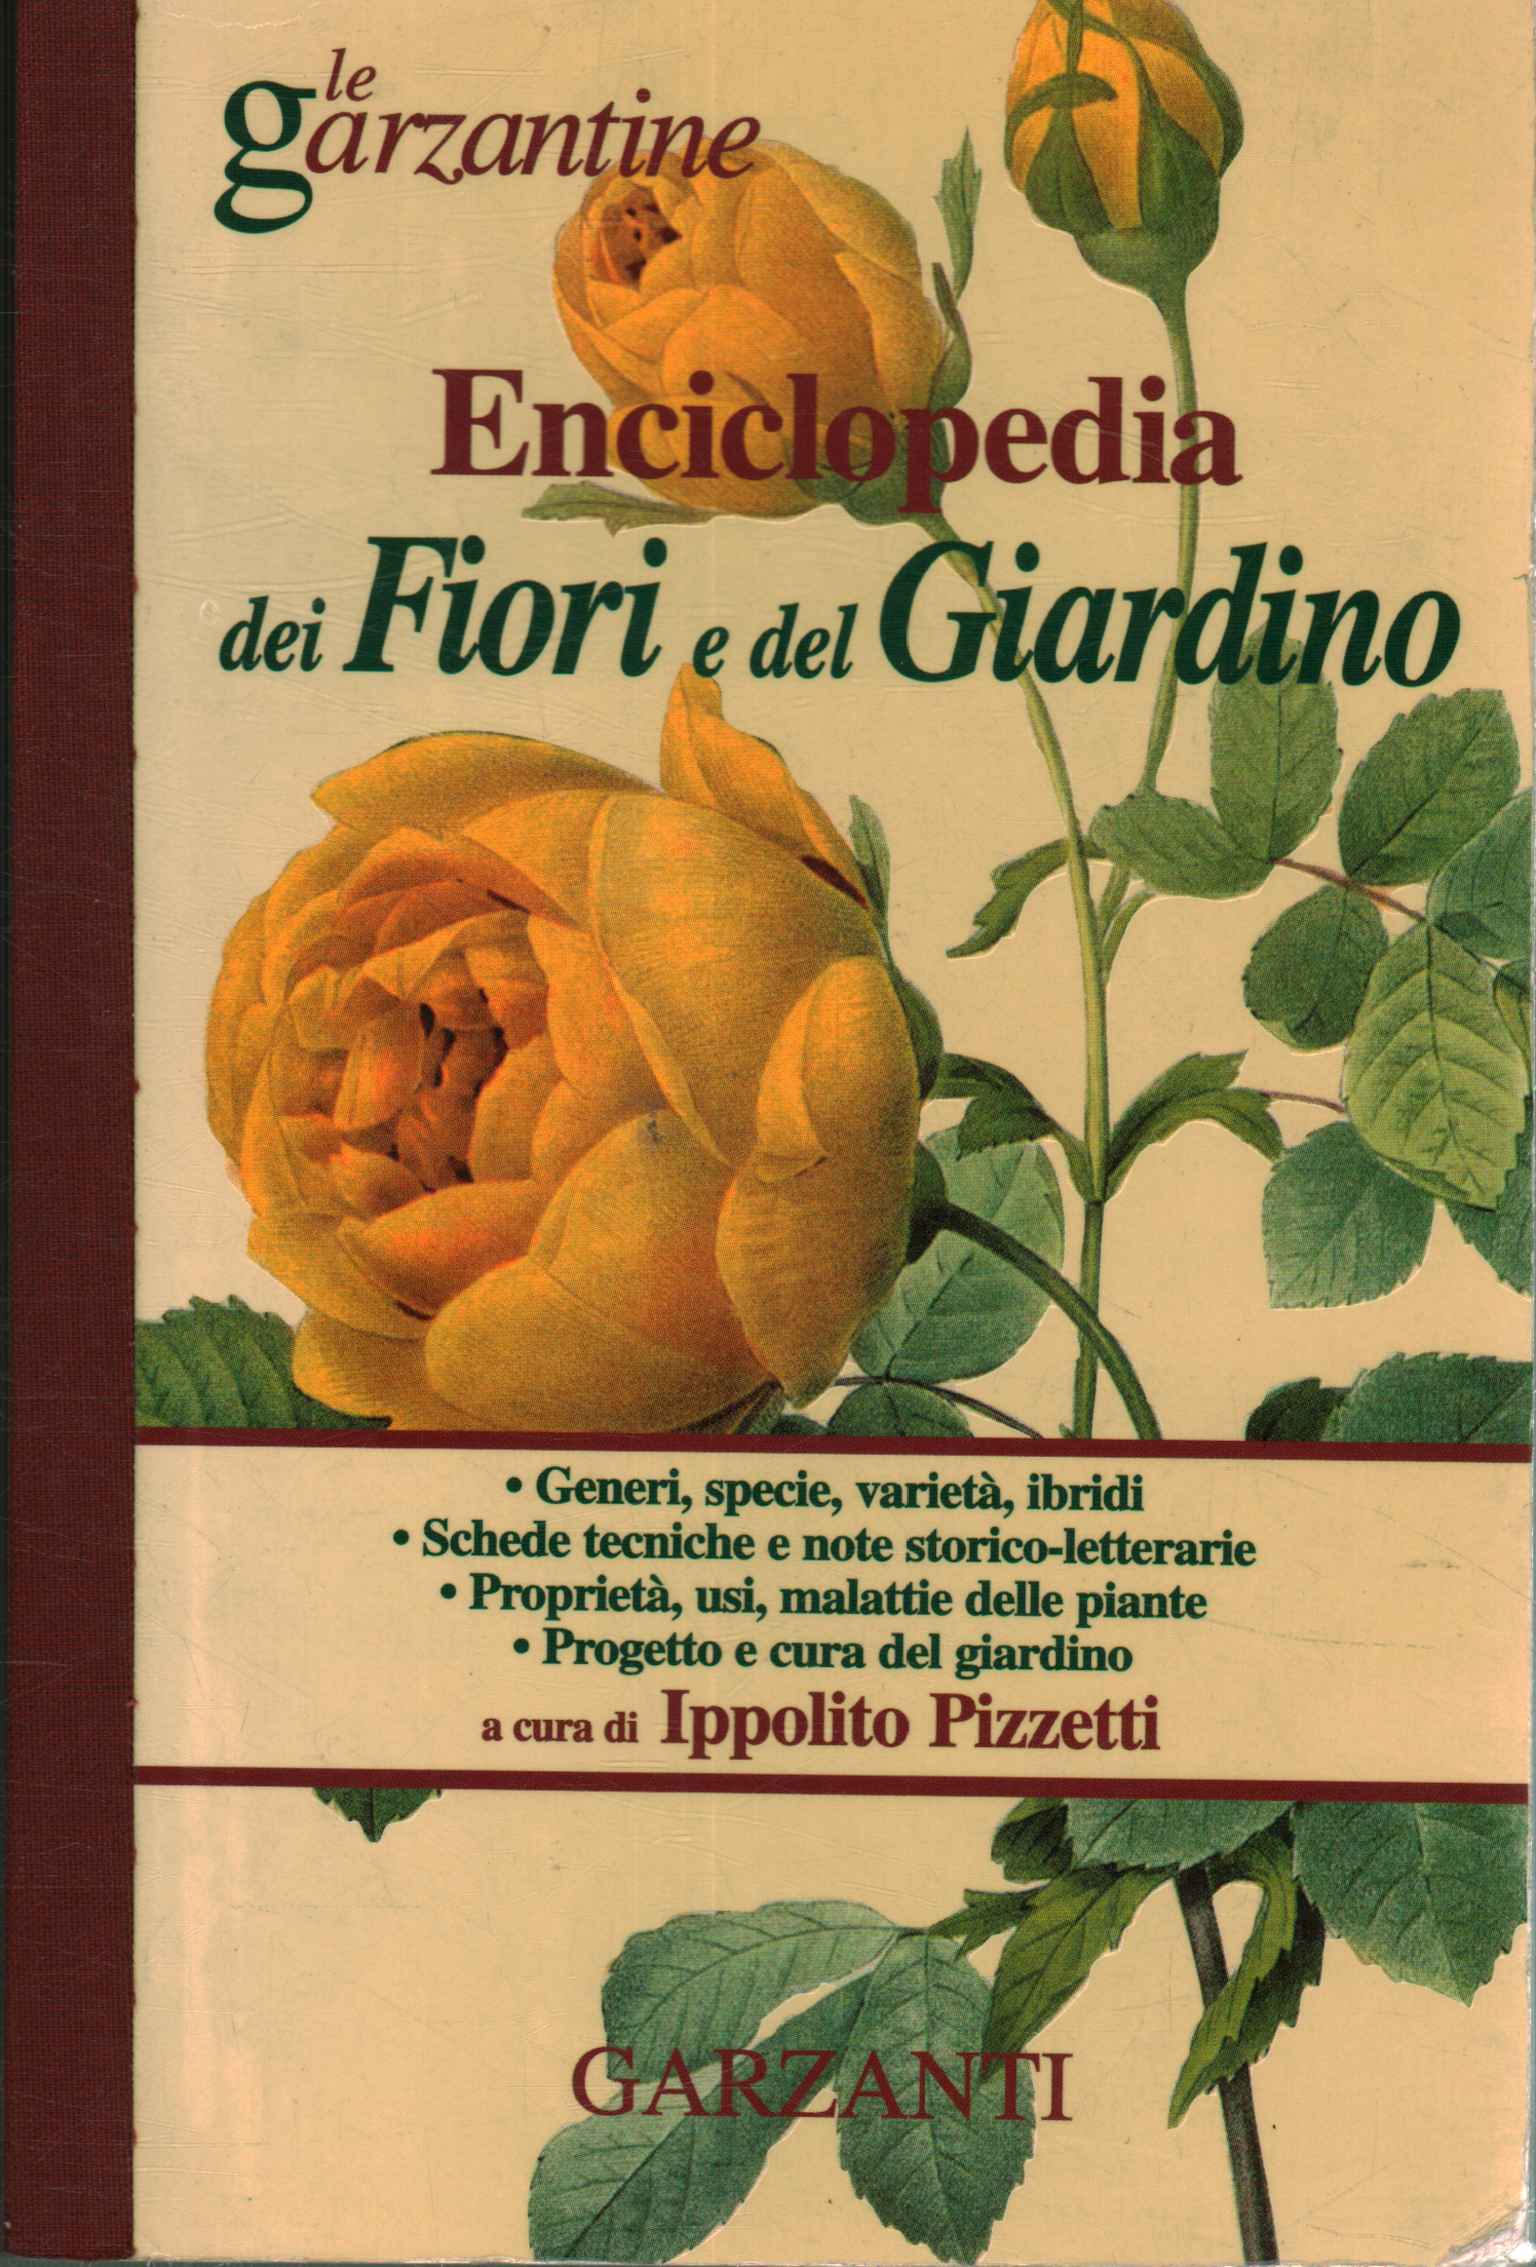 Enciclopedia de flores y jardines.